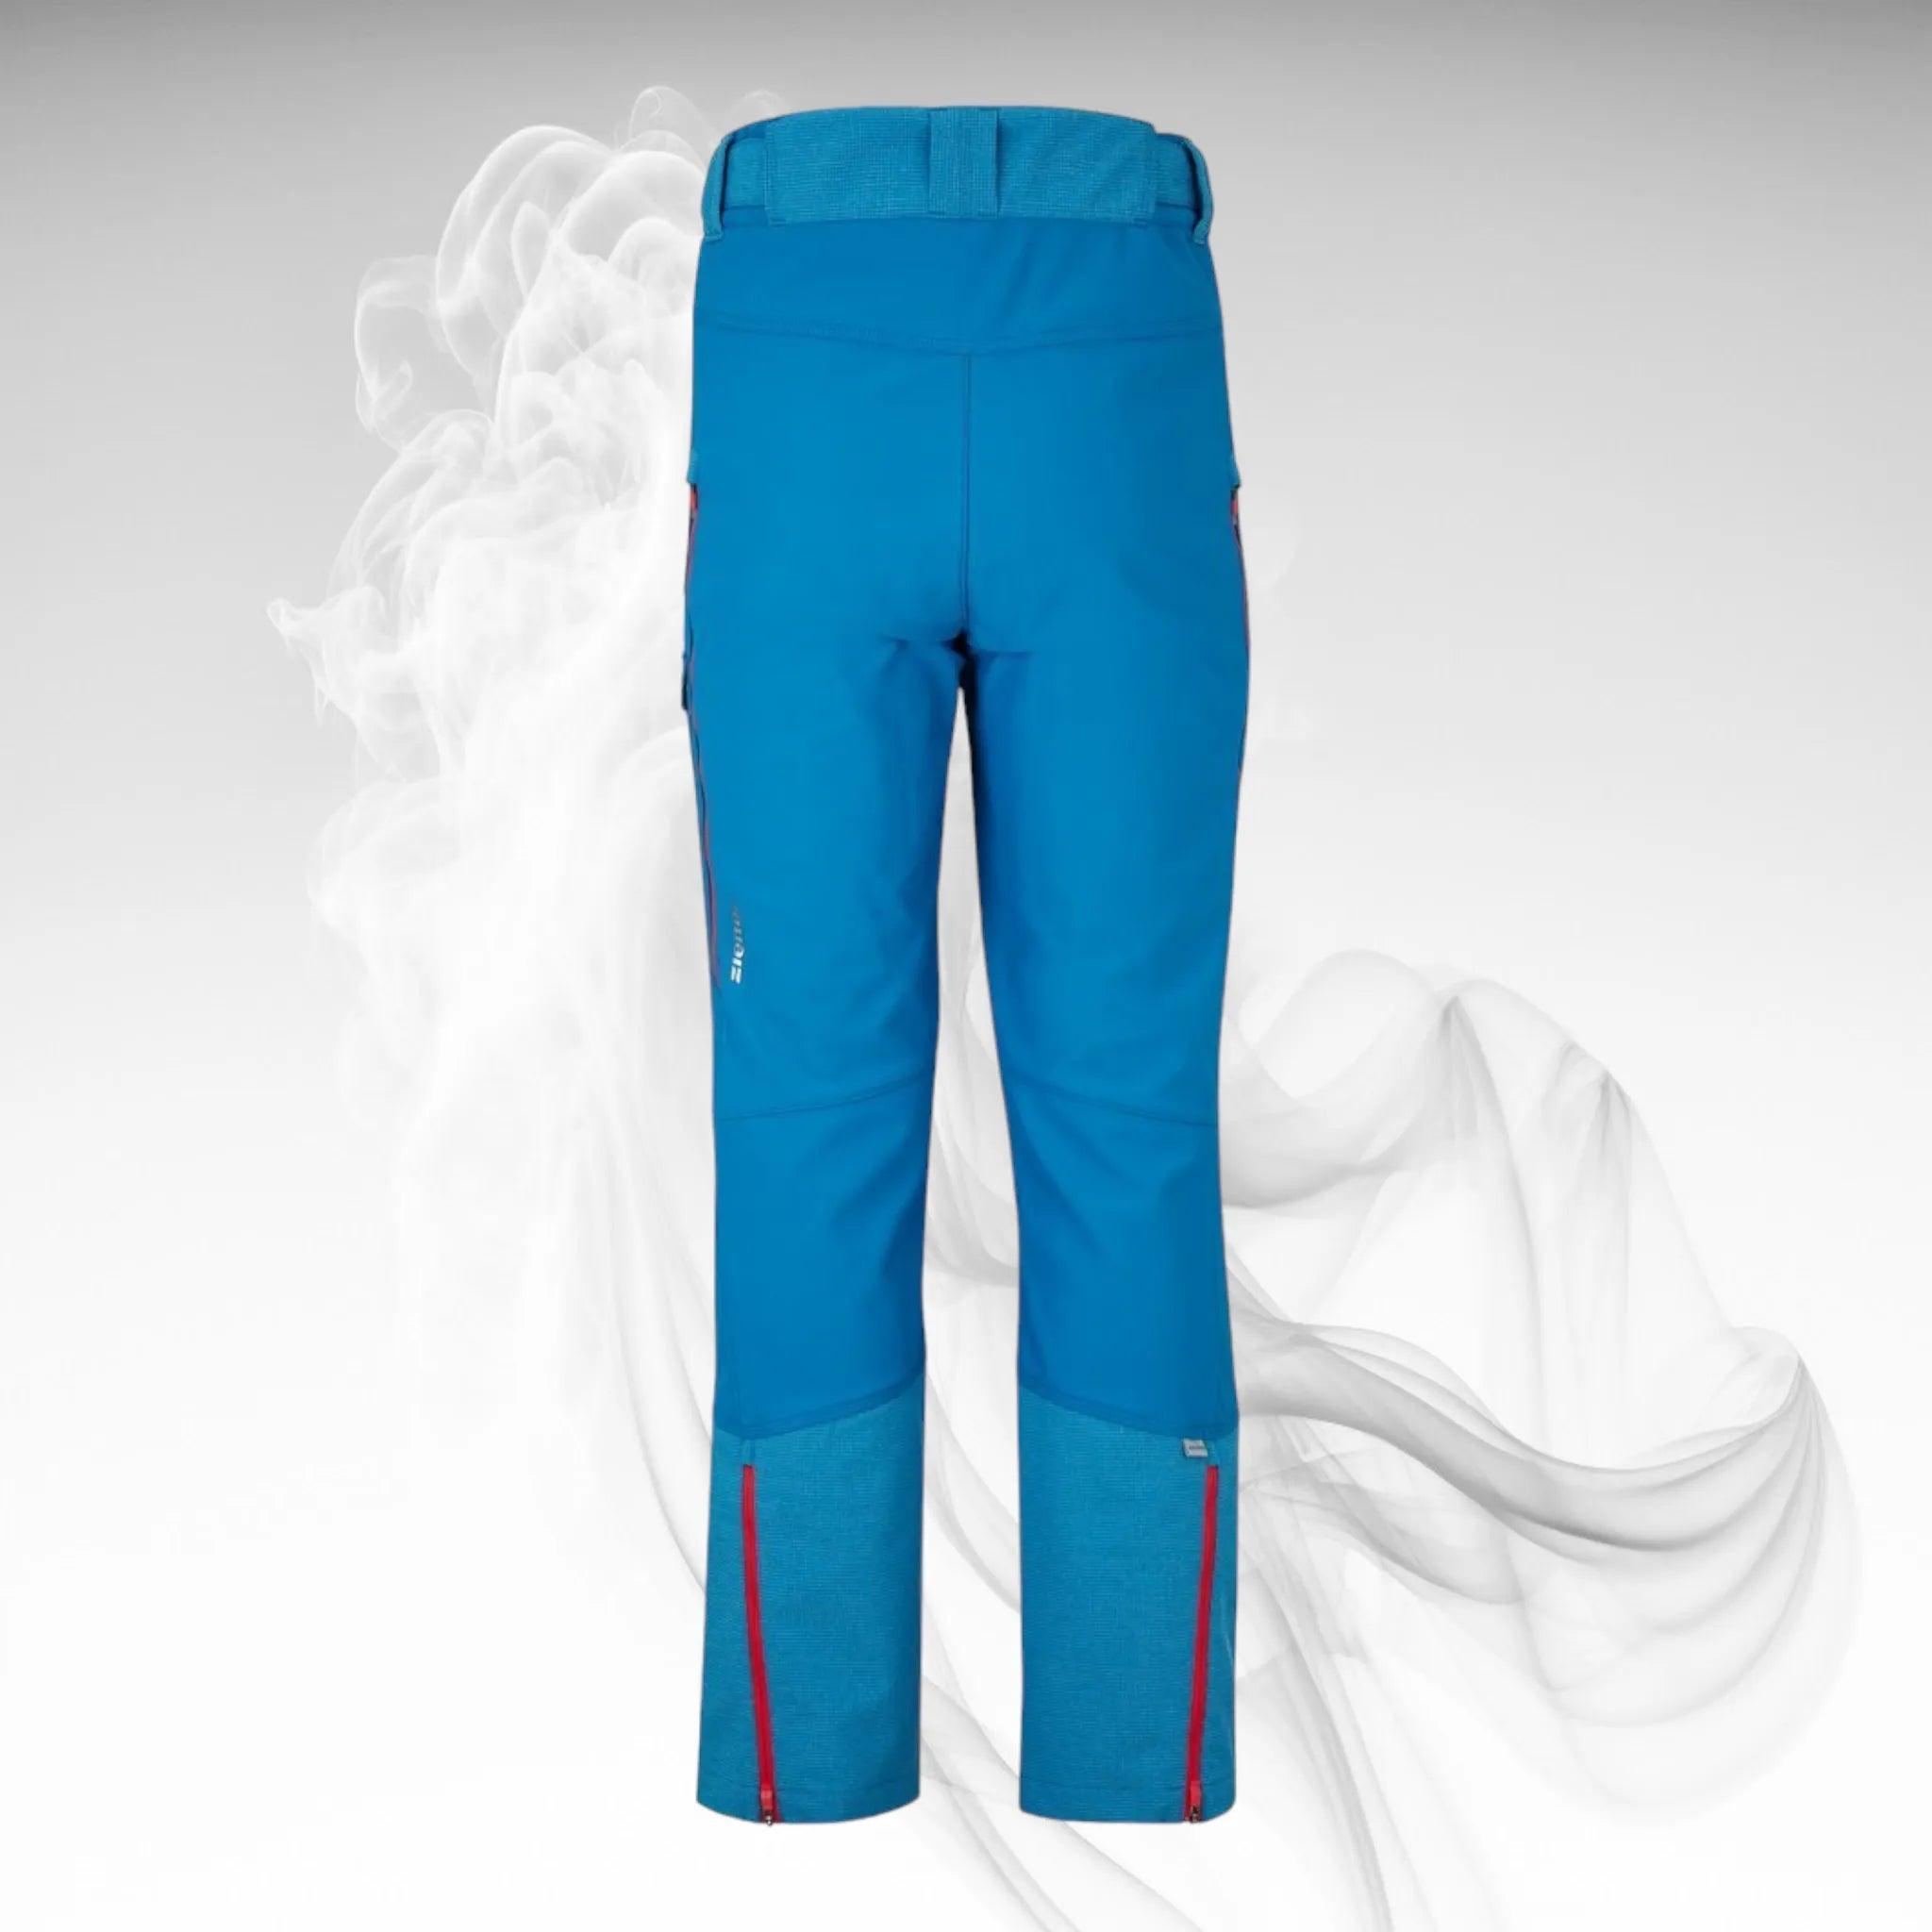 Softshell Pants ZIENER Norbert Man Steel Blue - 2020/21 - Dash Racegear 